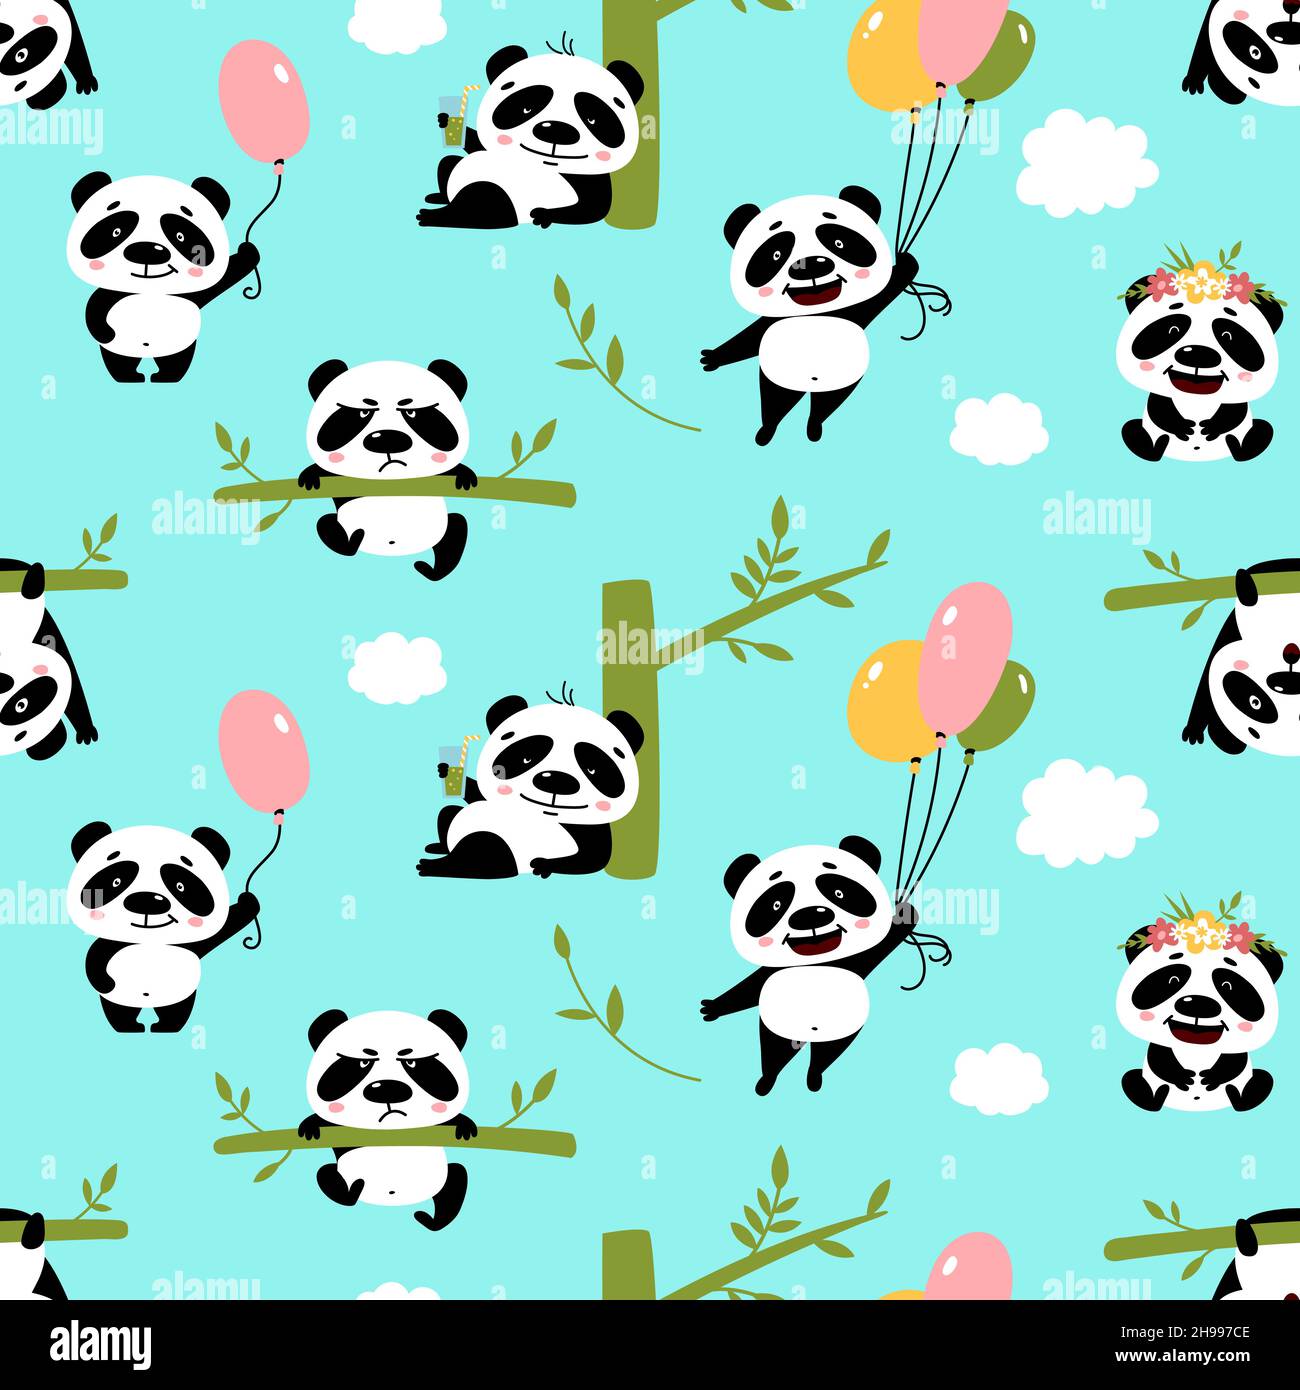 100 Kawaii Panda Wallpapers  Wallpaperscom